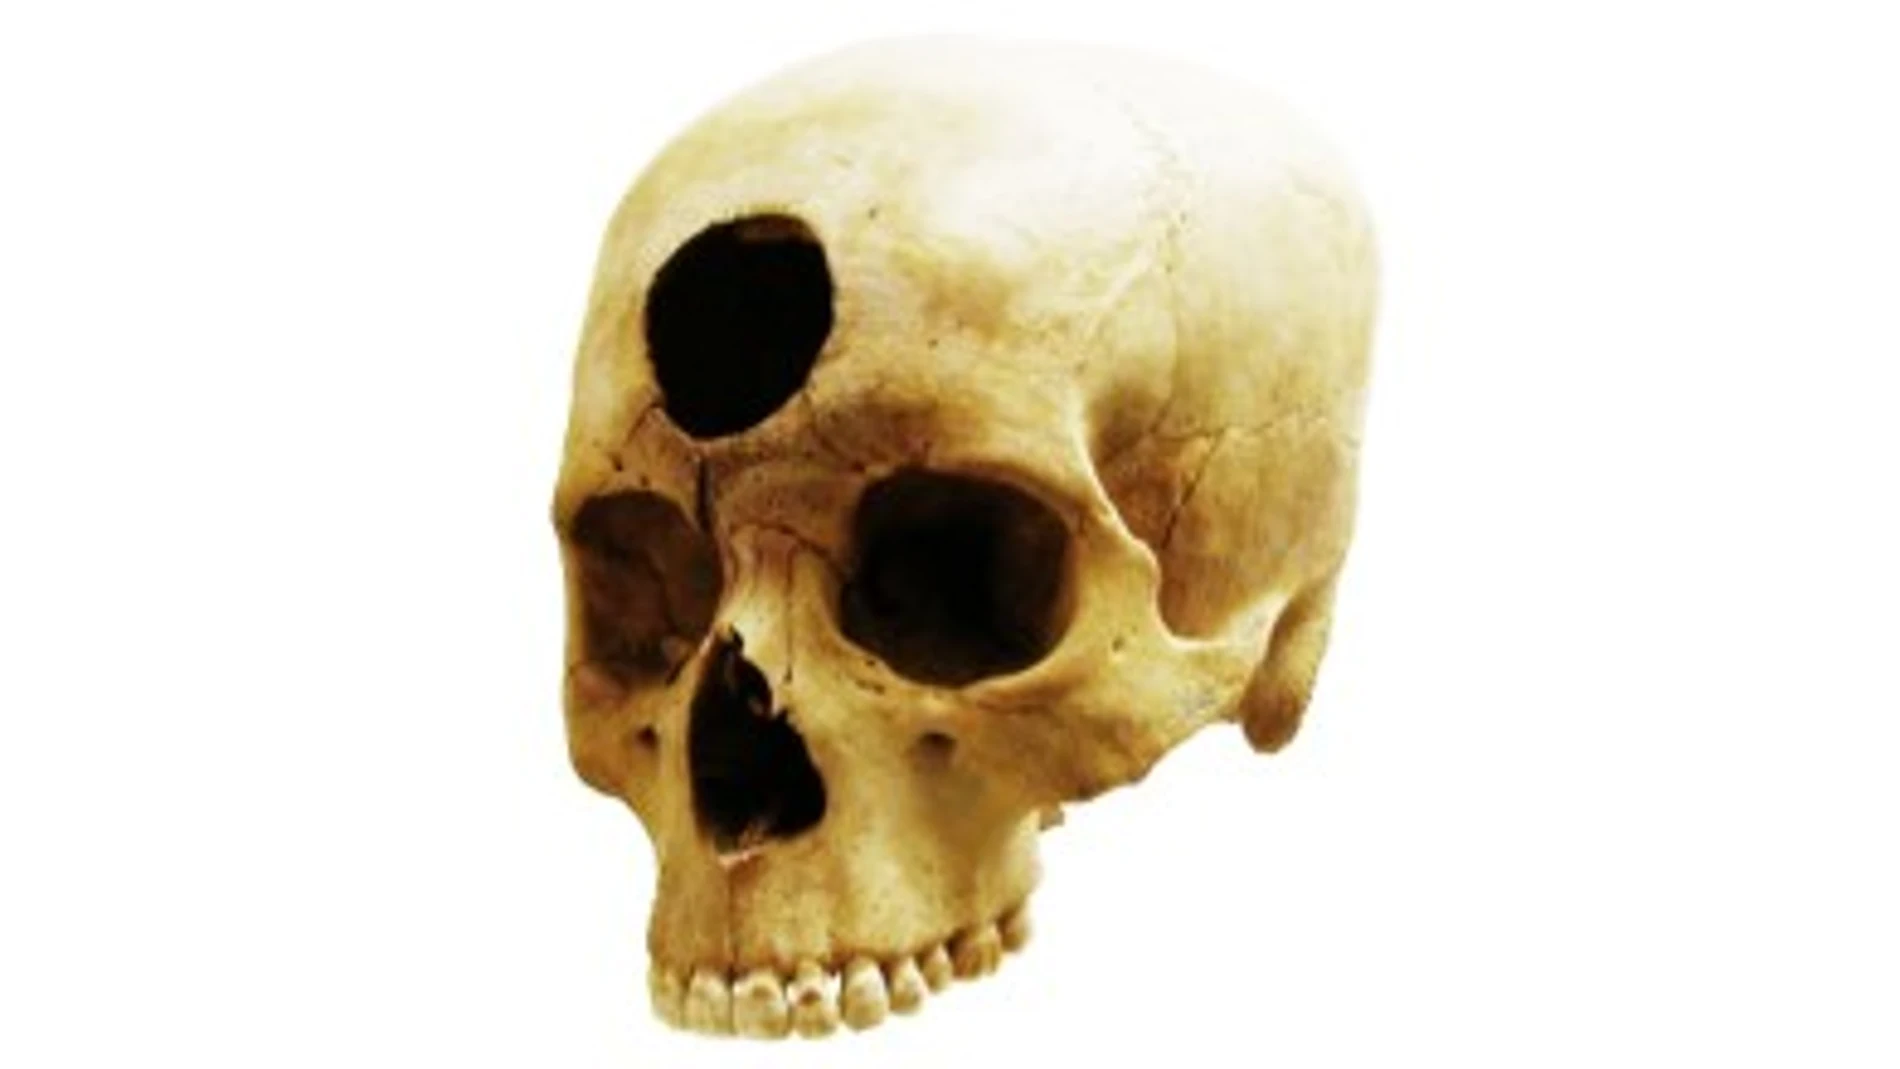 Cráneo trepanado encontrado en Nazca, Perú.